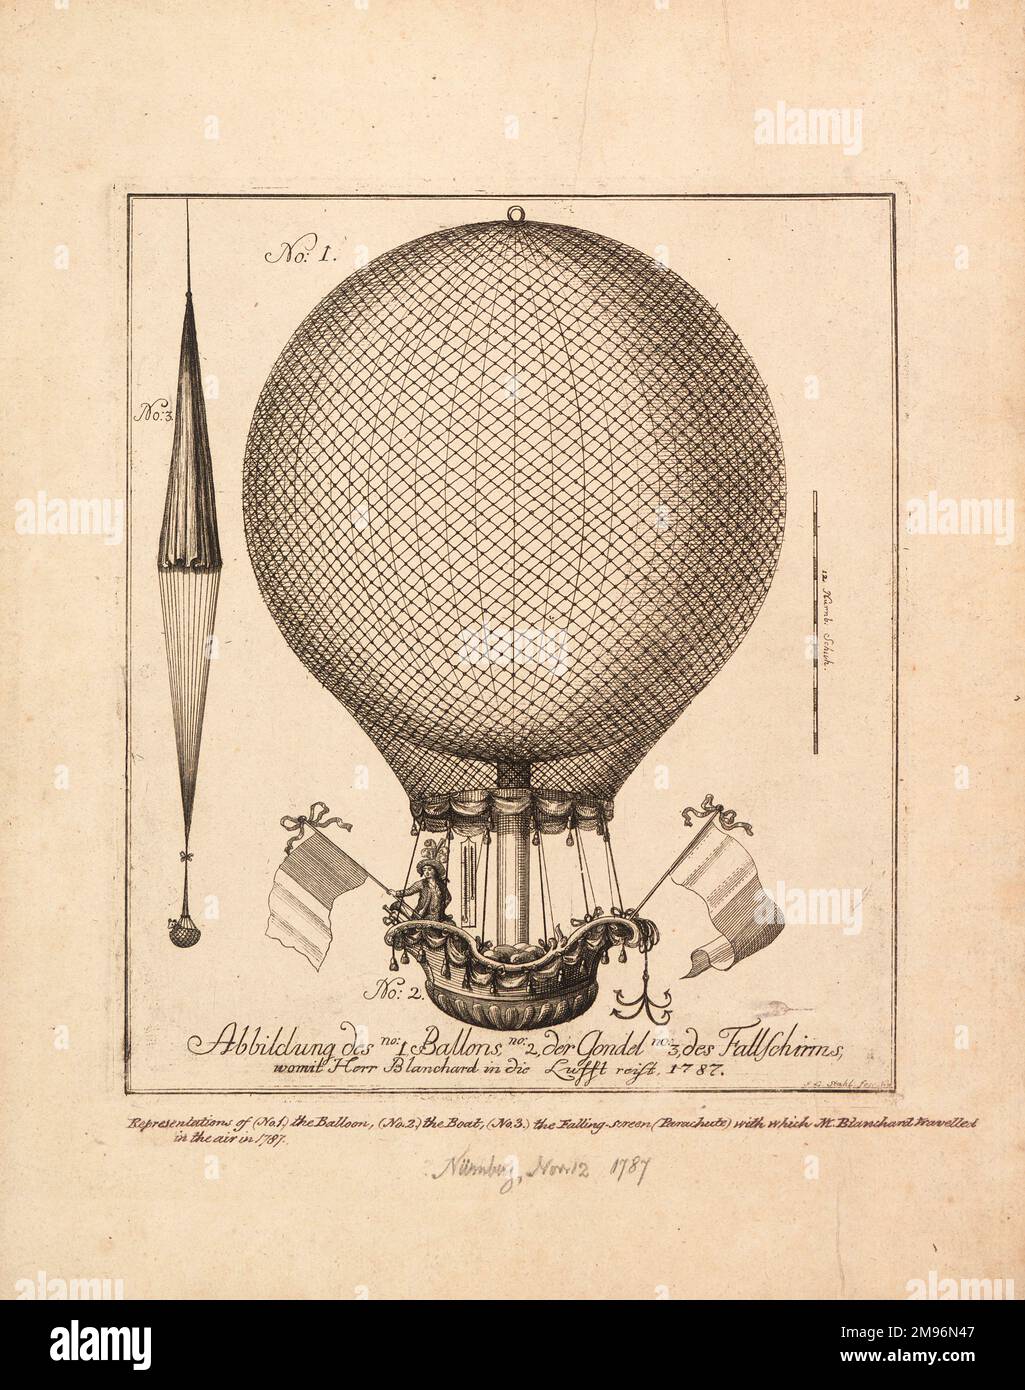 Ballon, in dem Jean-Pierre Blanchard über Nürnberg aufstieg. Zeigt den Ballon, die Gondel und den Fallschirm, mit einem kleinen Tier, das aus dem Käfig schaut. (2 von 2) Stockfoto